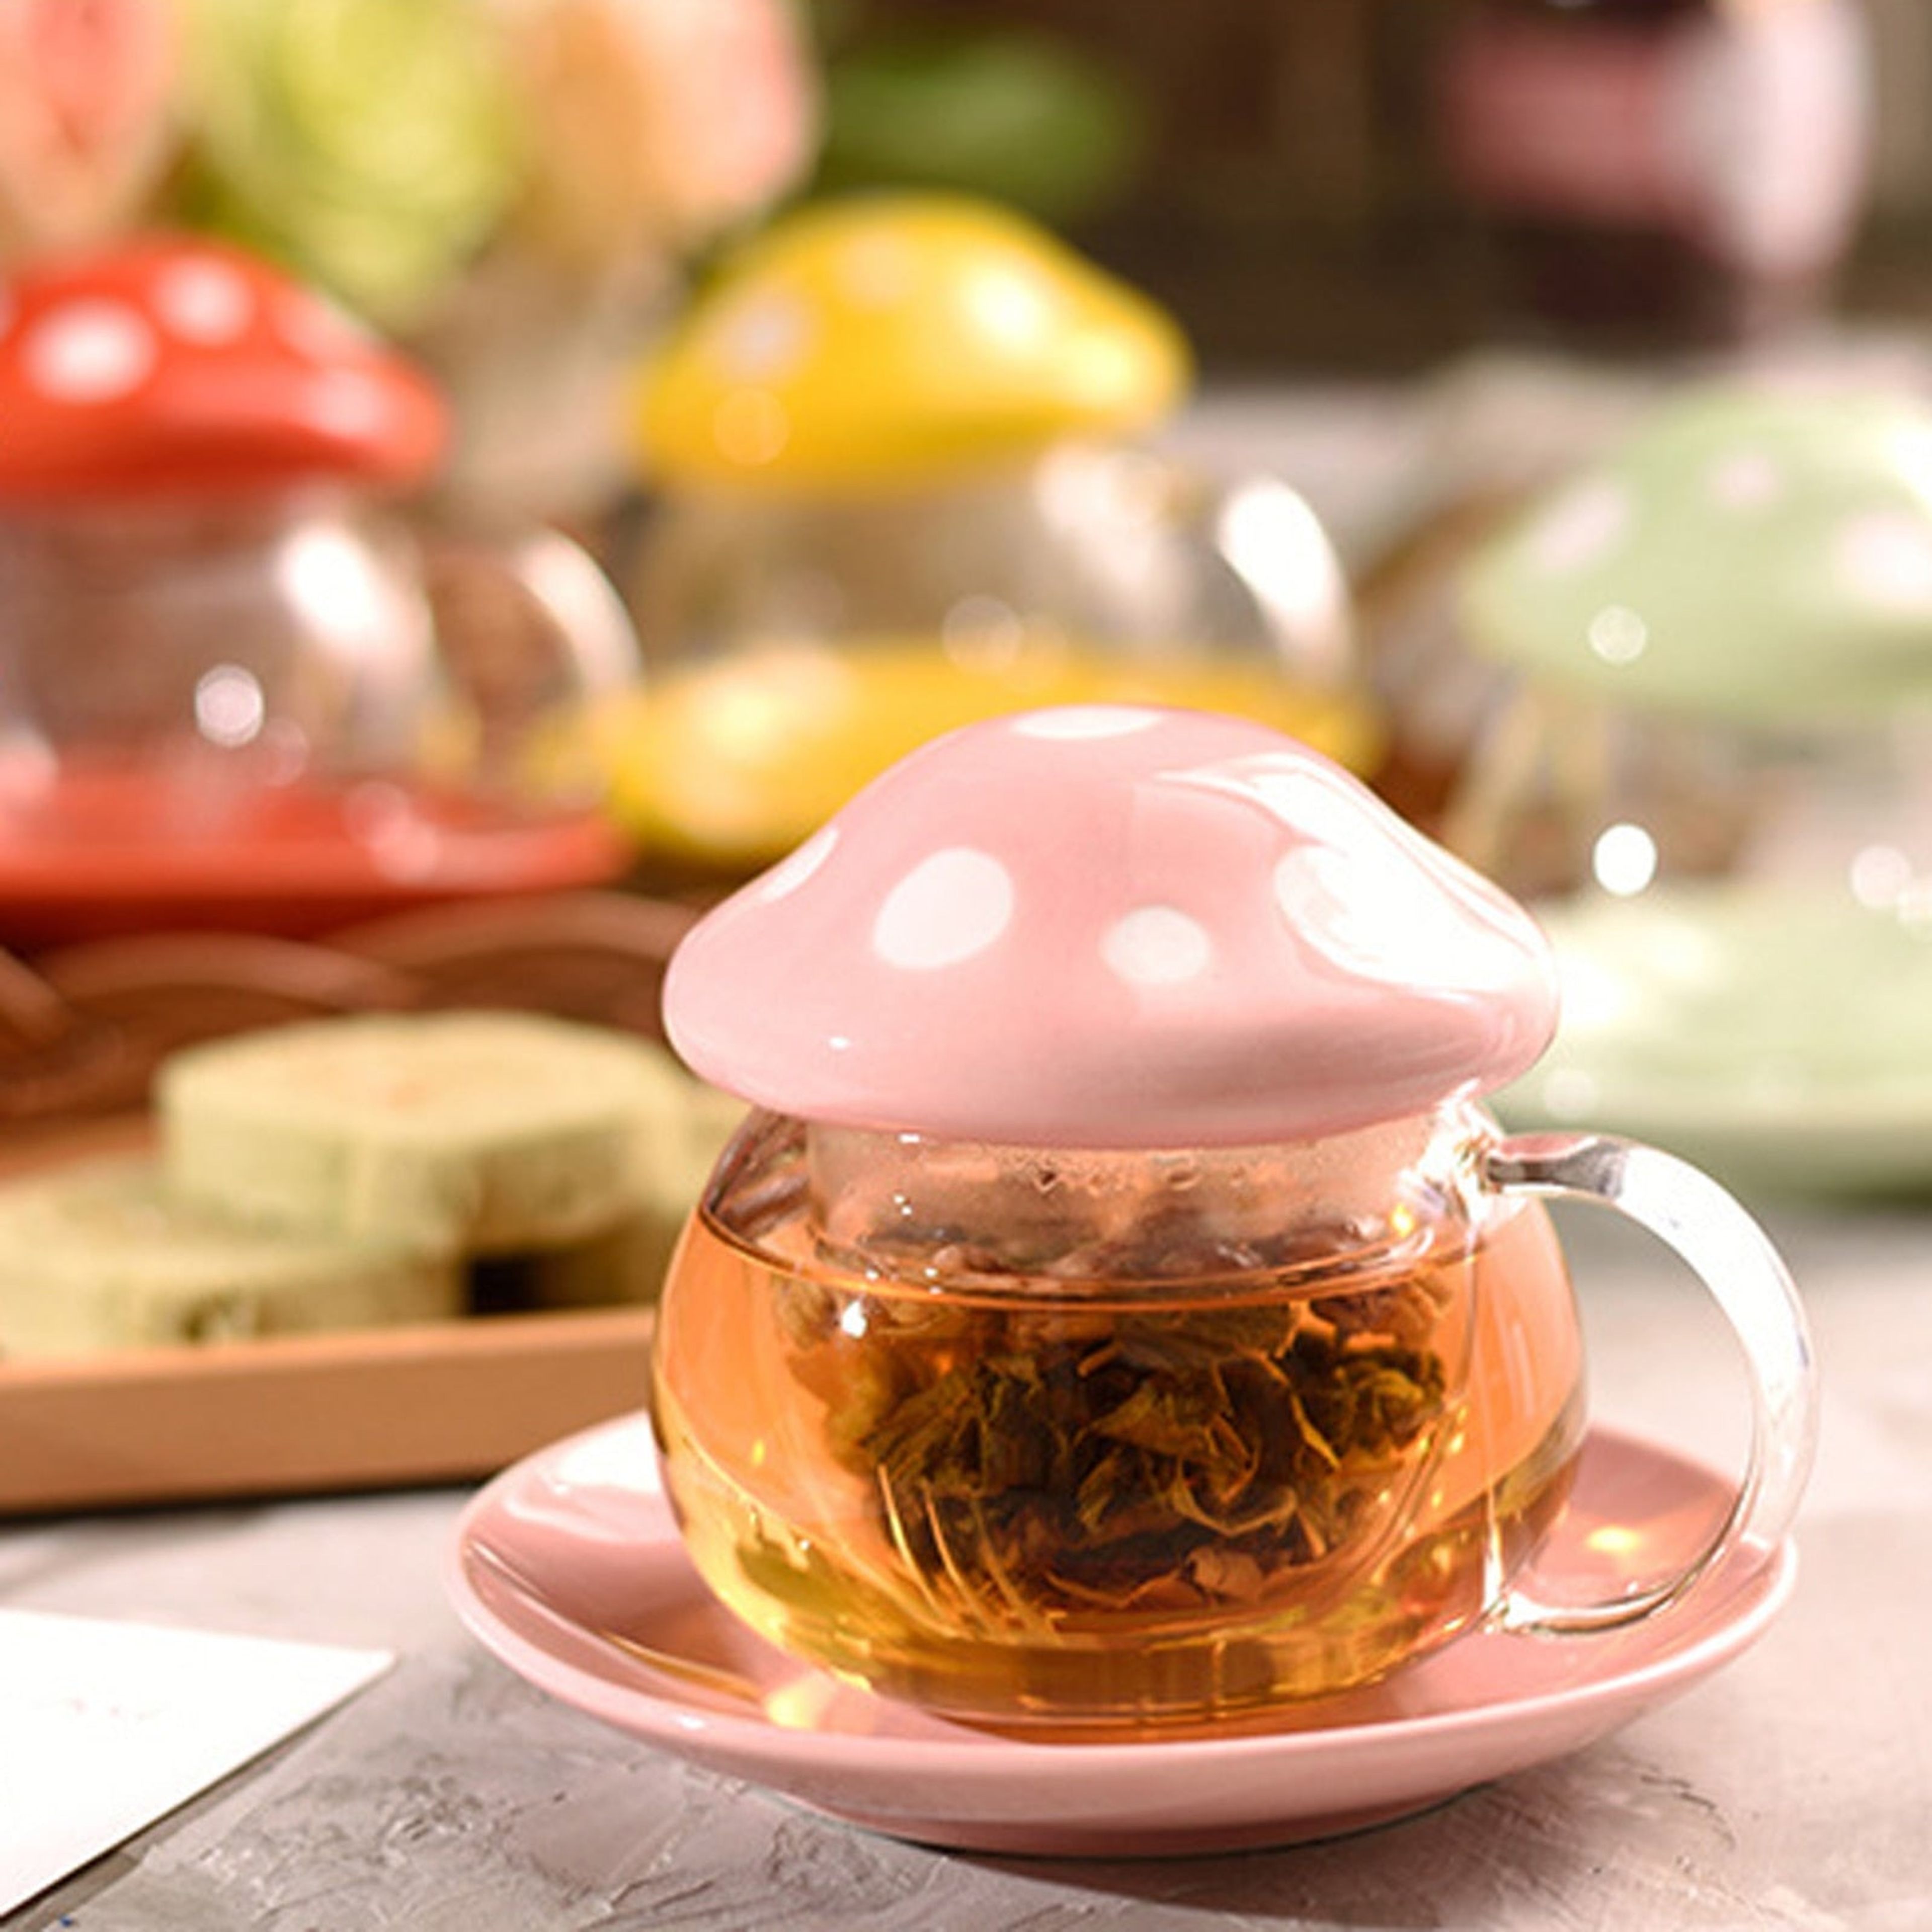 Mushroom Tea Infuser Glass - 10 OZ